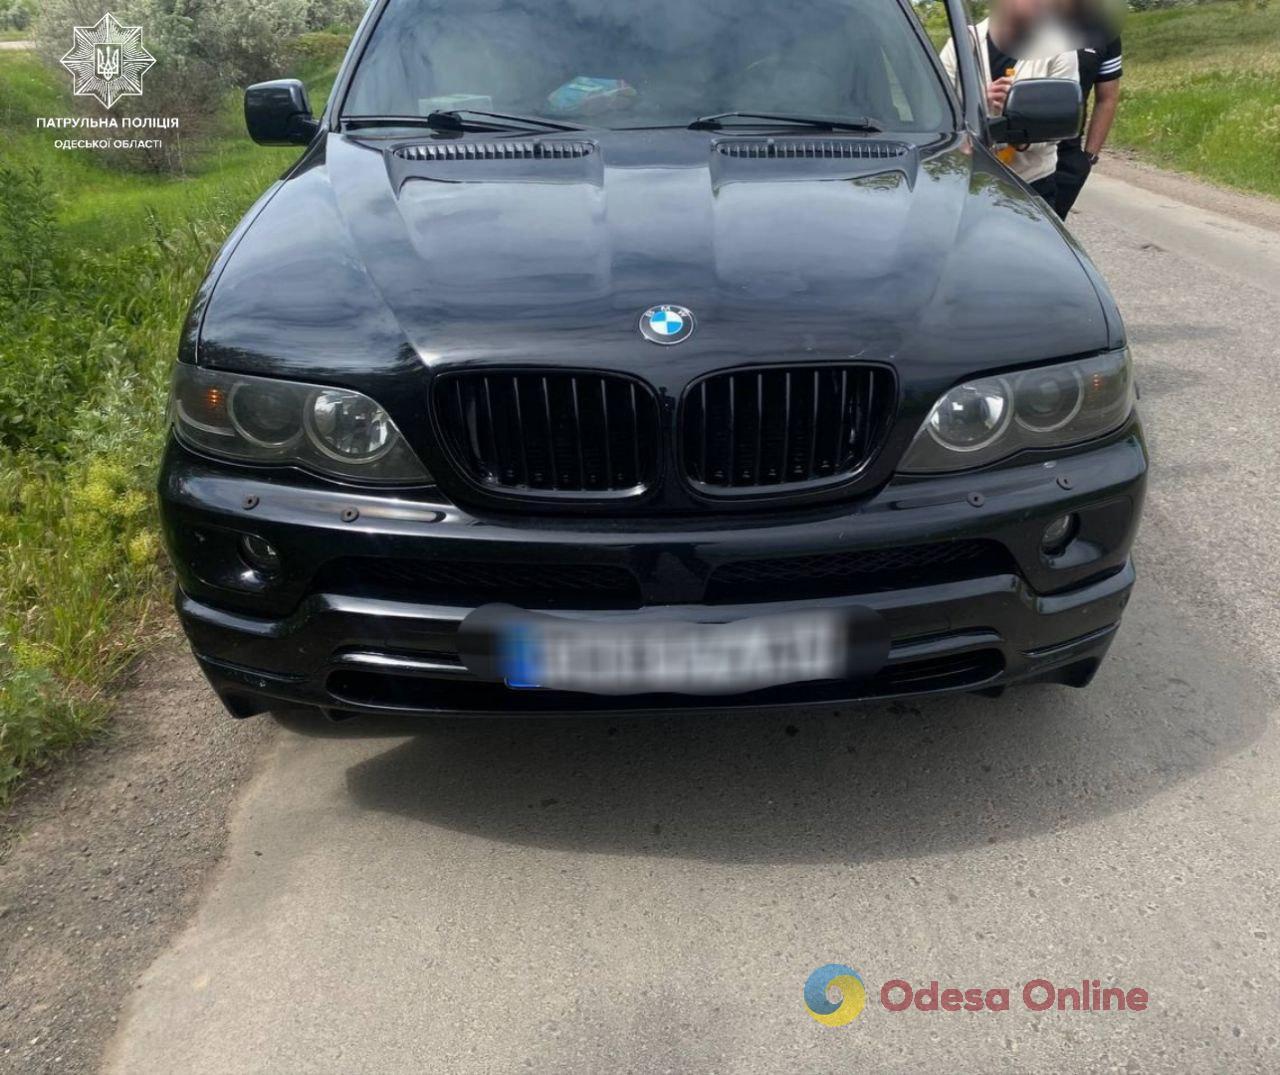 В Одесской области патрульные обнаружили автомобиль с поддельным VIN-кодом